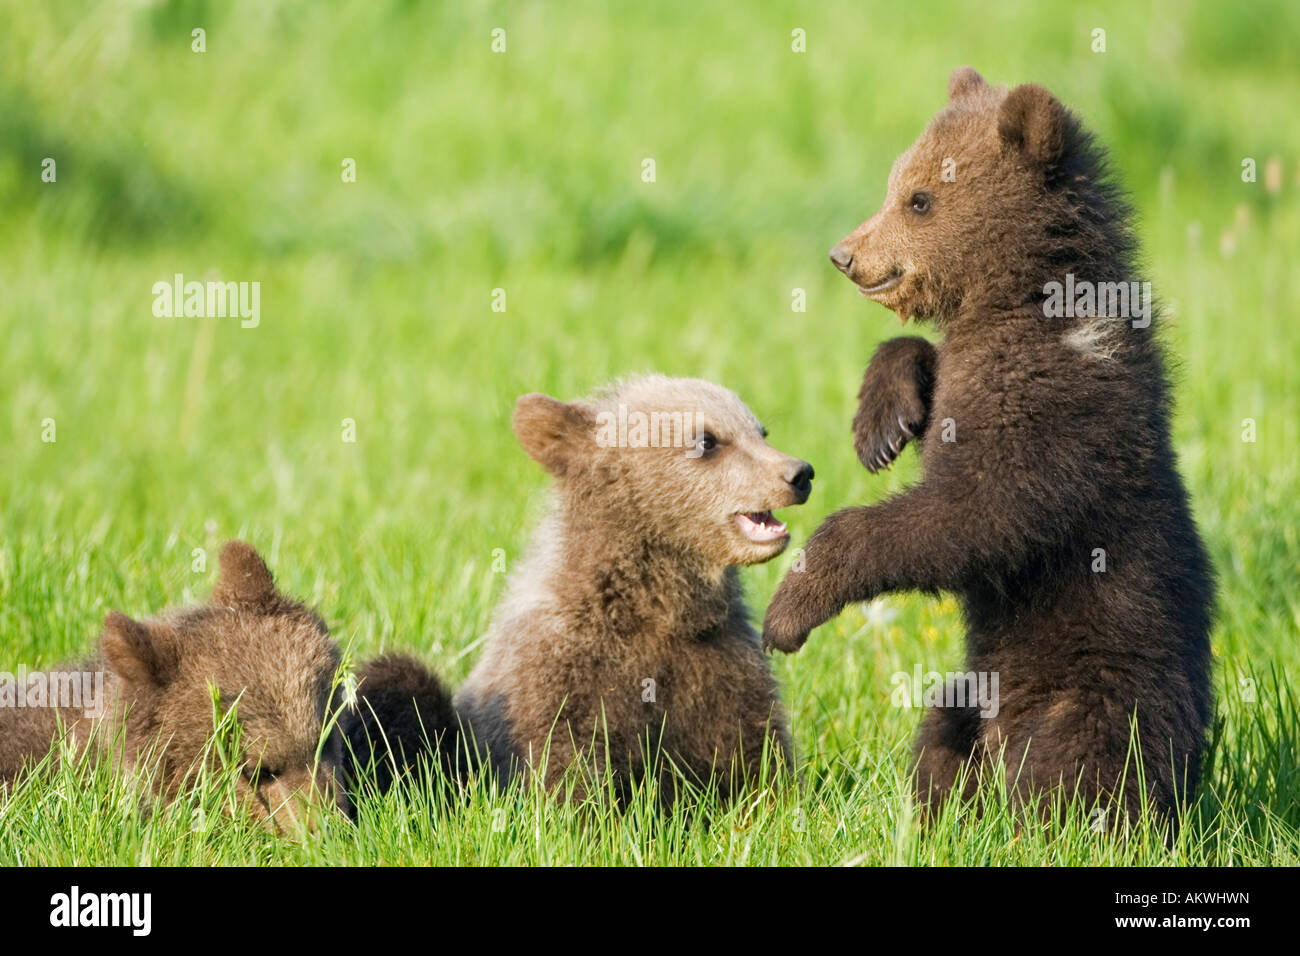 European Brown Bear Cubs Playing ((Ursus arctos), close-up Stock Photo